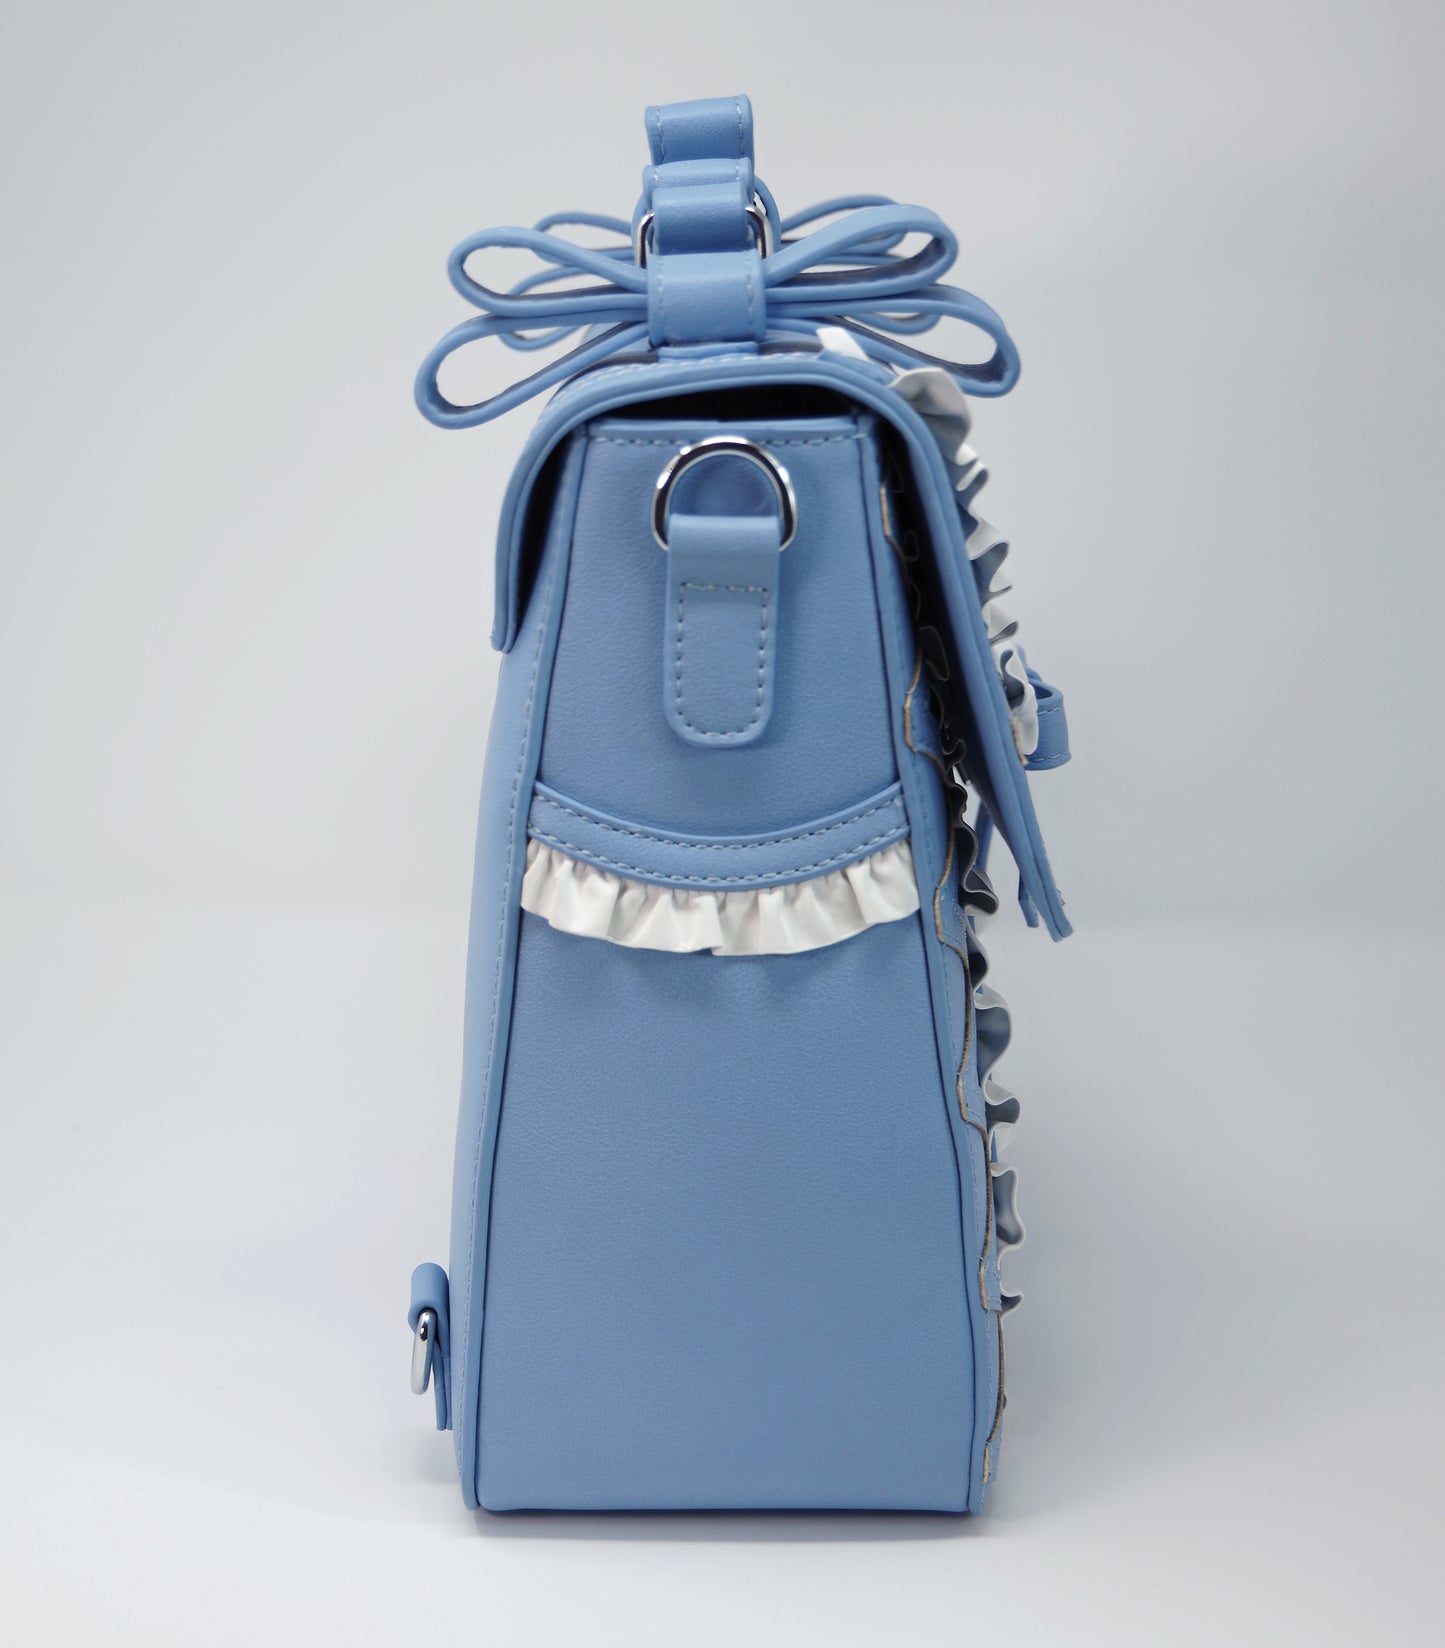 Wonderland Teatime Medium Sized Handbag